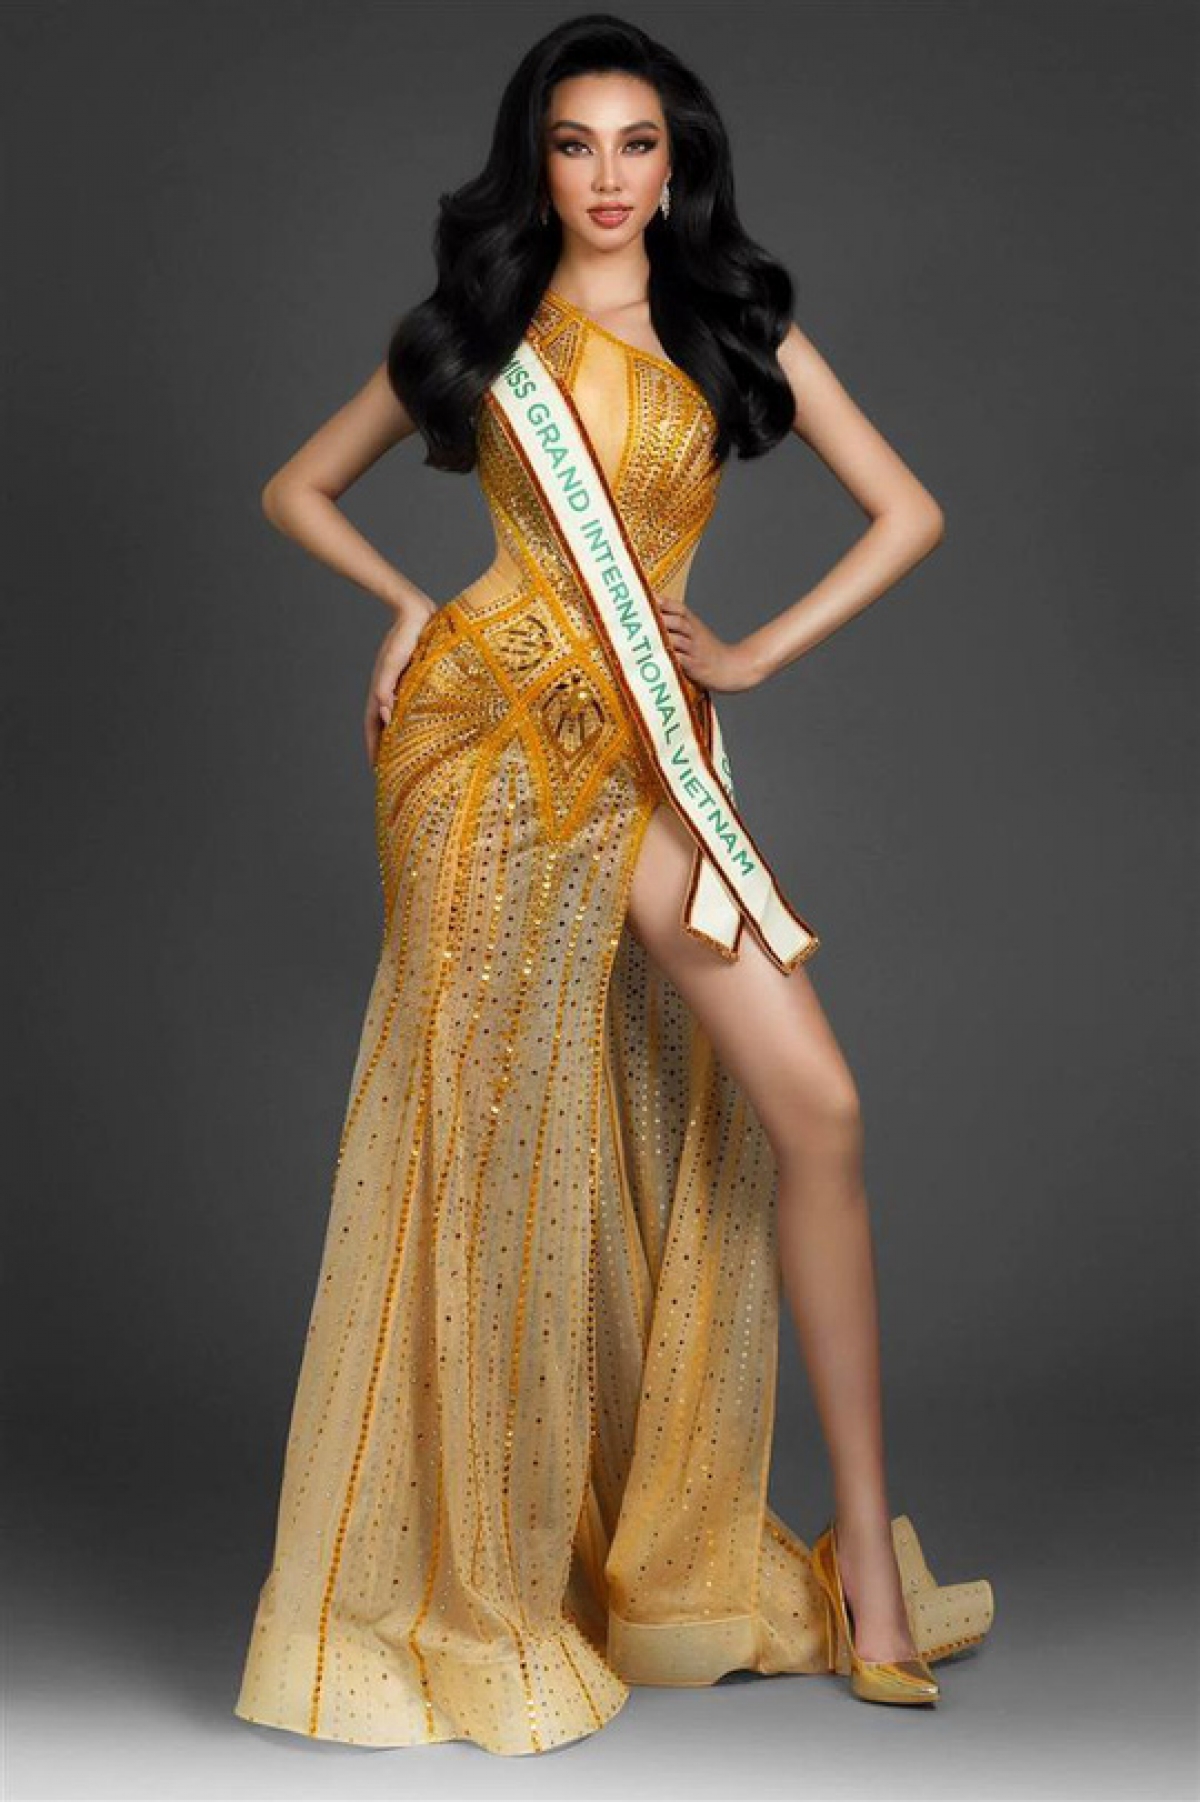 Dàn mỹ nhân Việt và chặng đua giành top tại Miss Grand International - Ảnh 6.